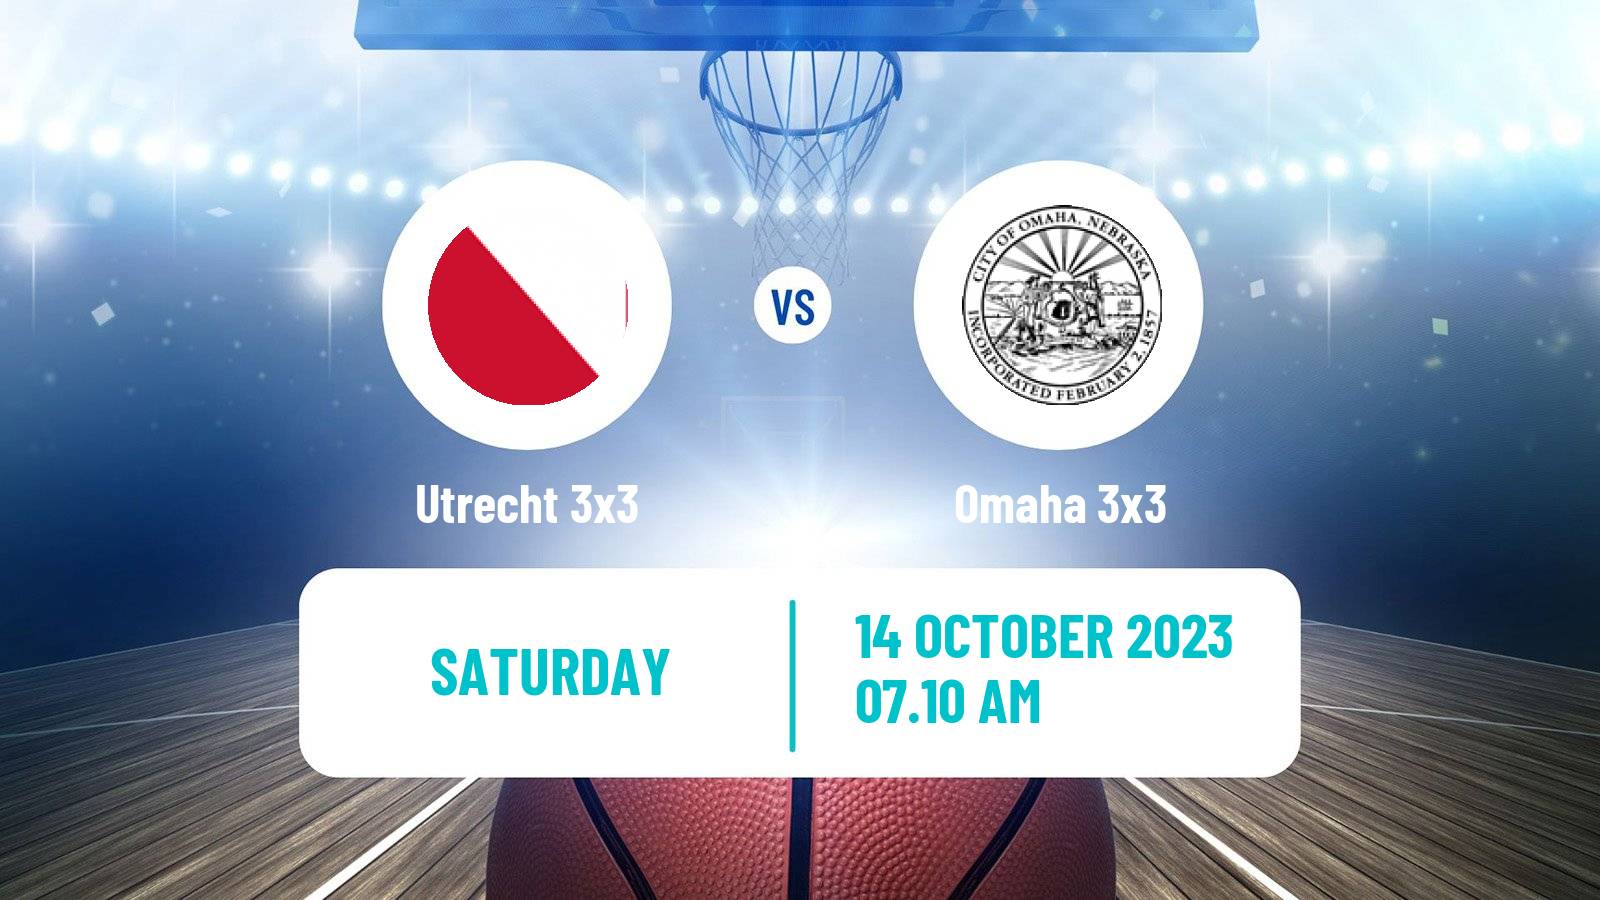 Basketball World Tour Shanghai 3x3 Utrecht 3x3 - Omaha 3x3